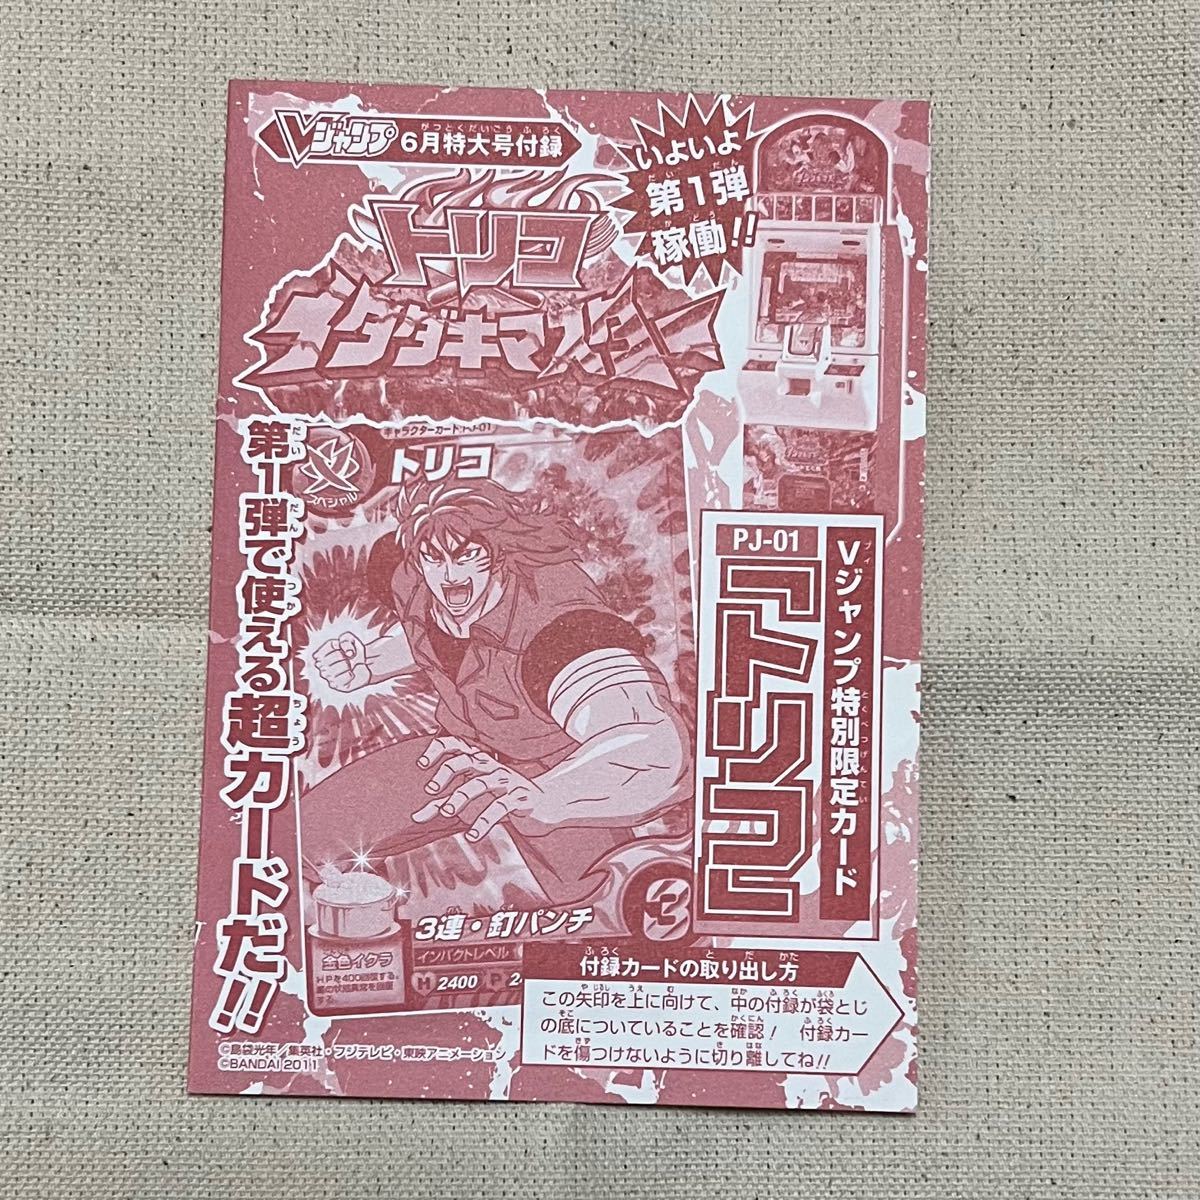 トリコ イタダキマスター(PJ-01) カード Vジャンプ6月号付録